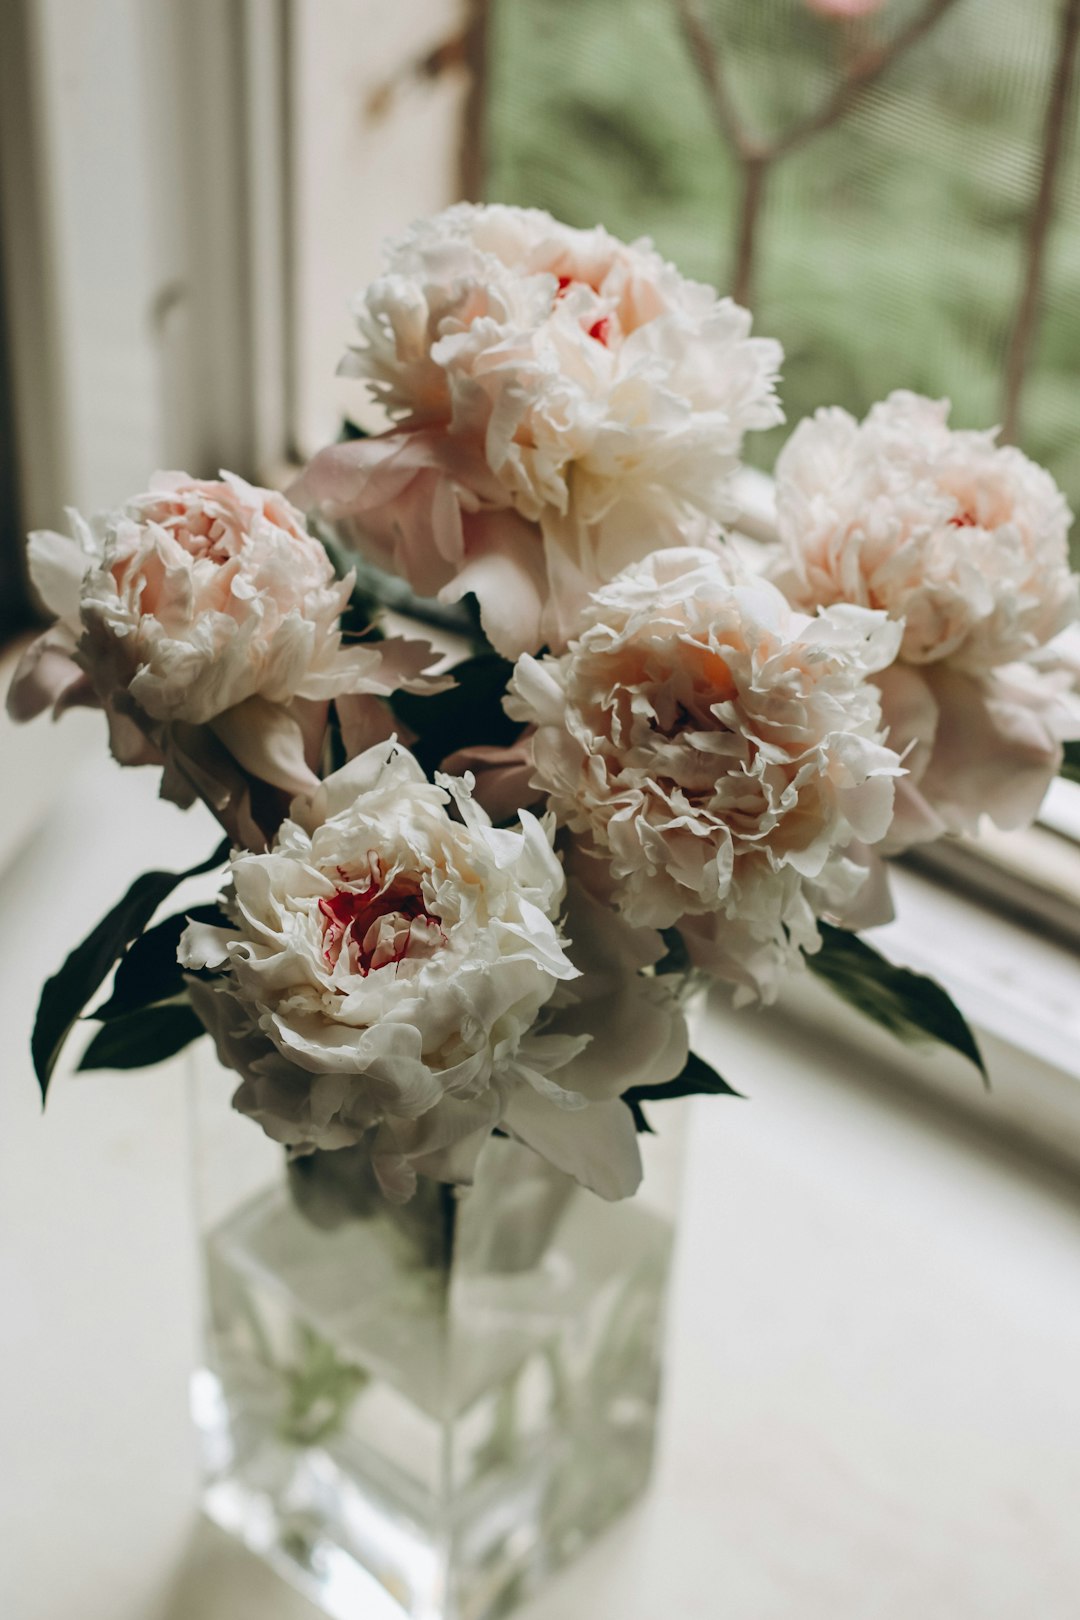 white flowers on glass vase